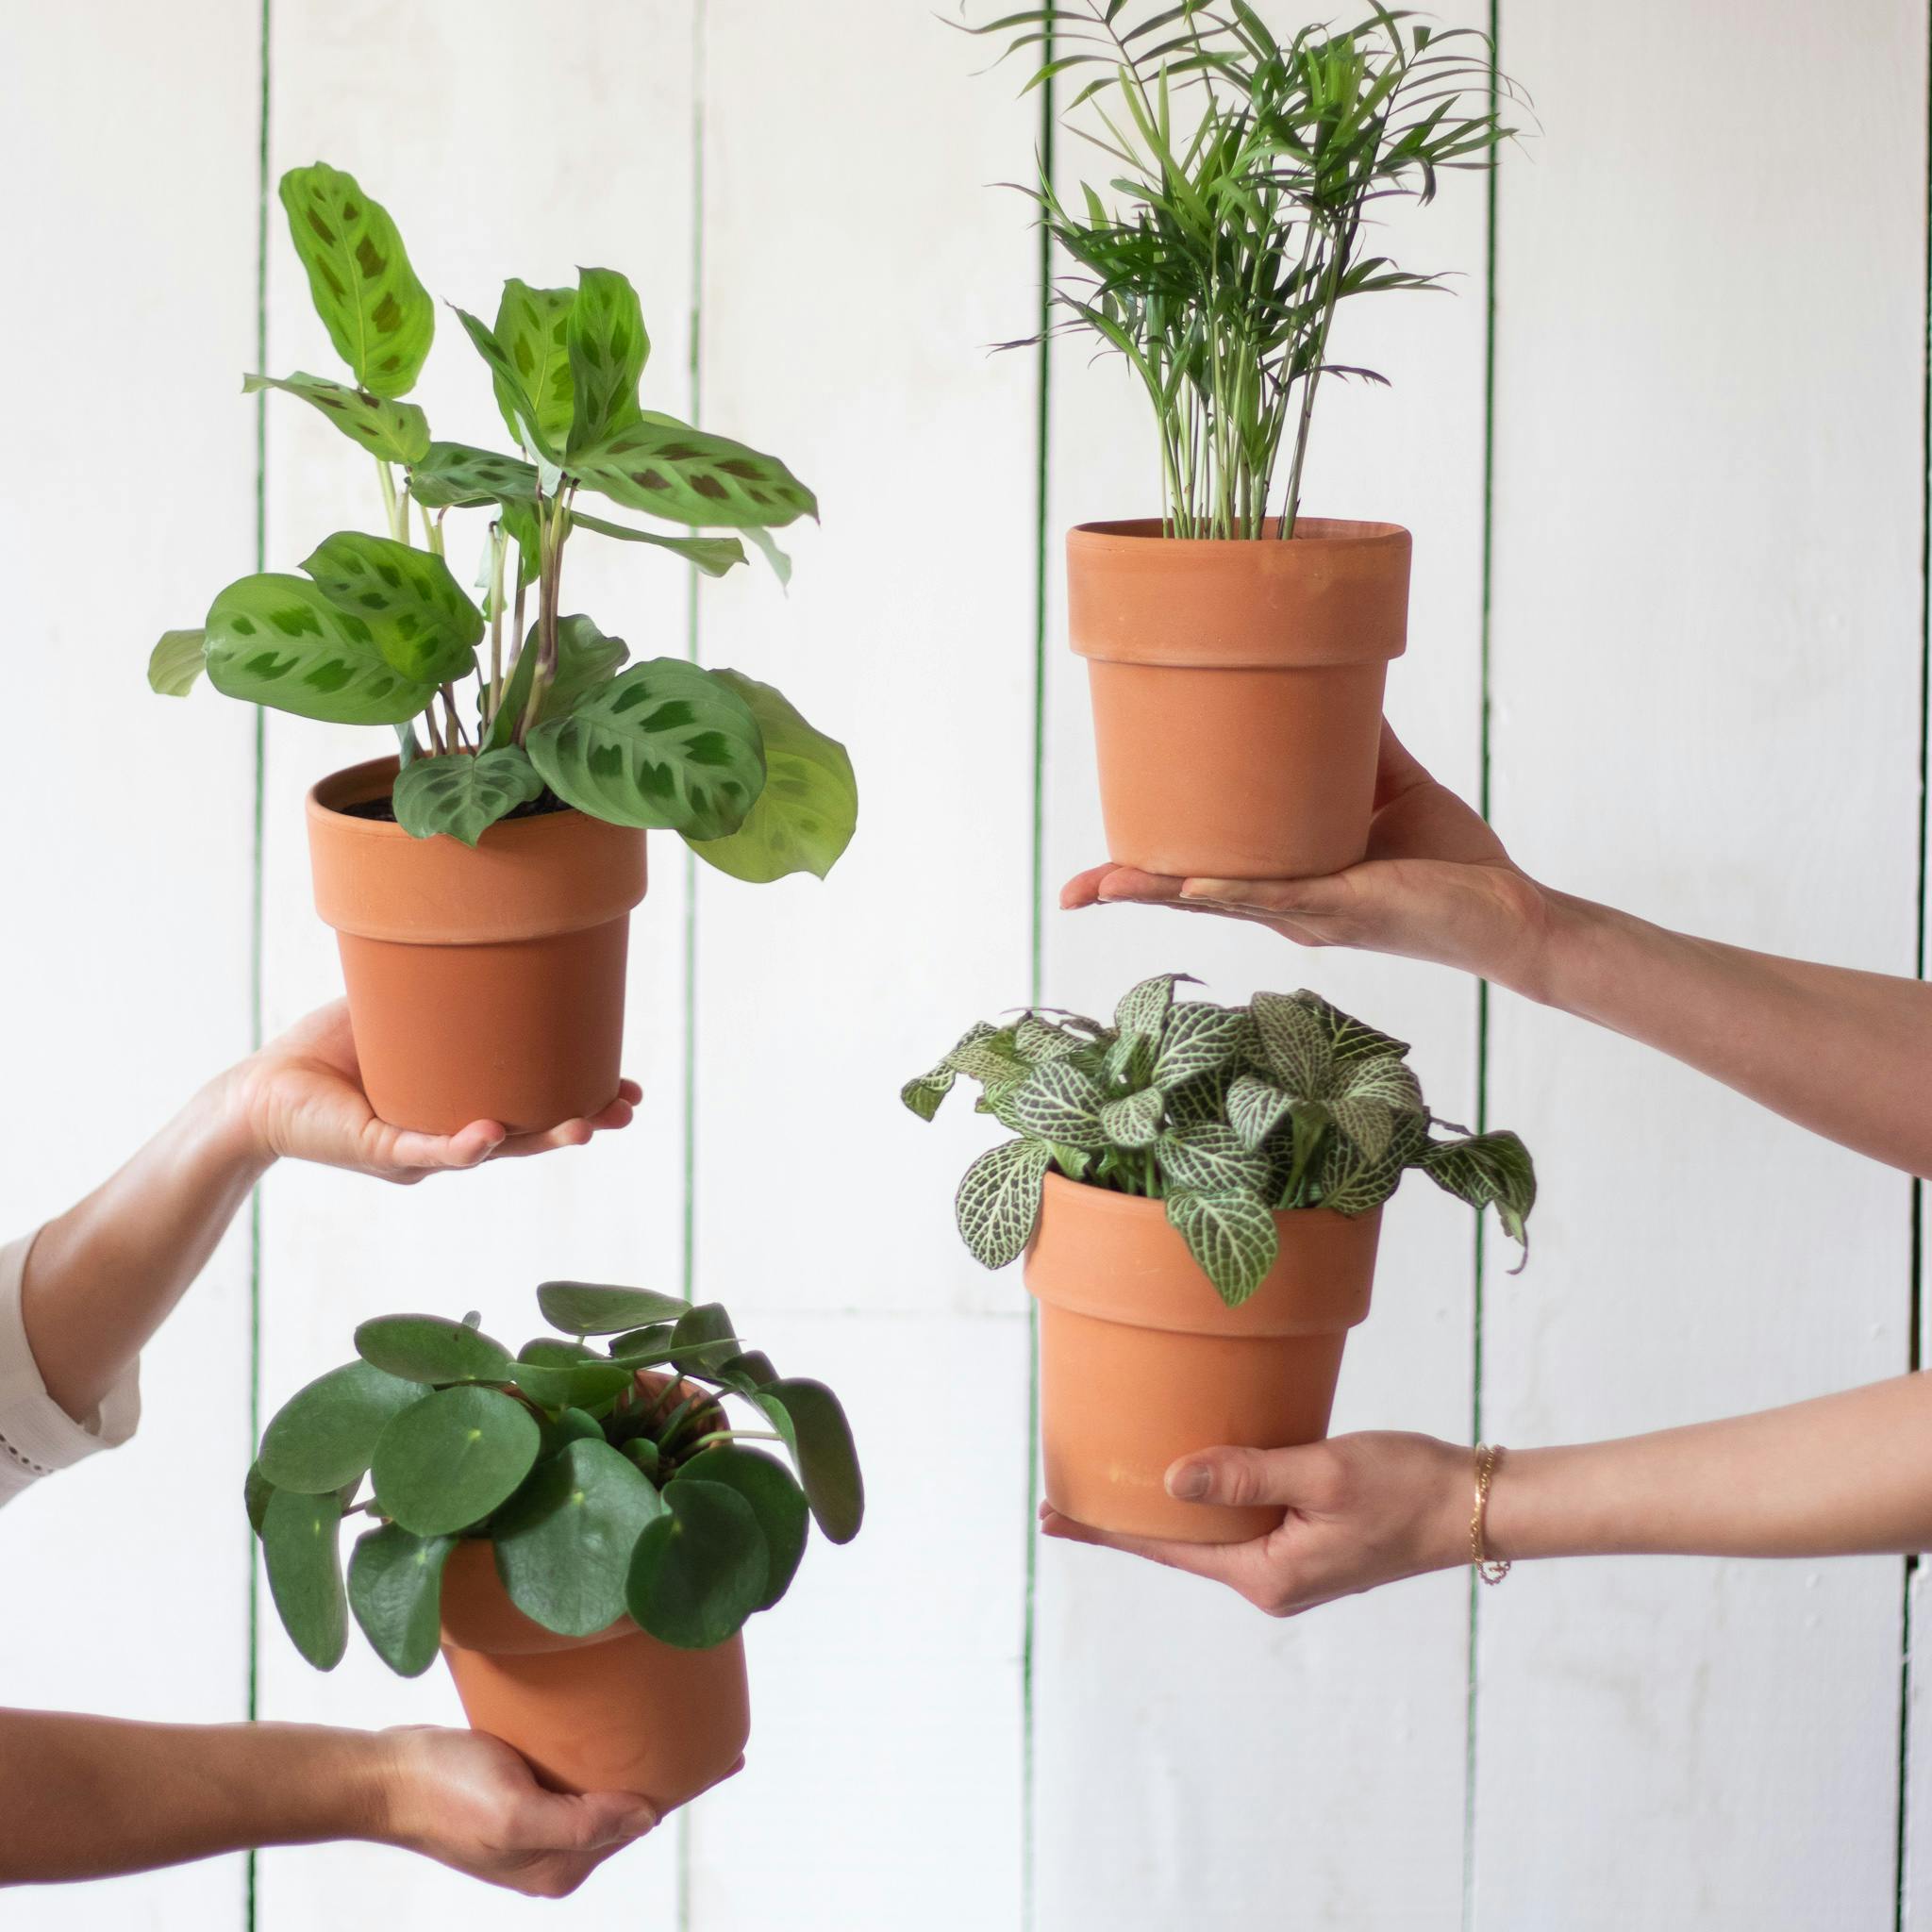 Ces 5 trucs simples et bon marché pour arroser vos plantes d